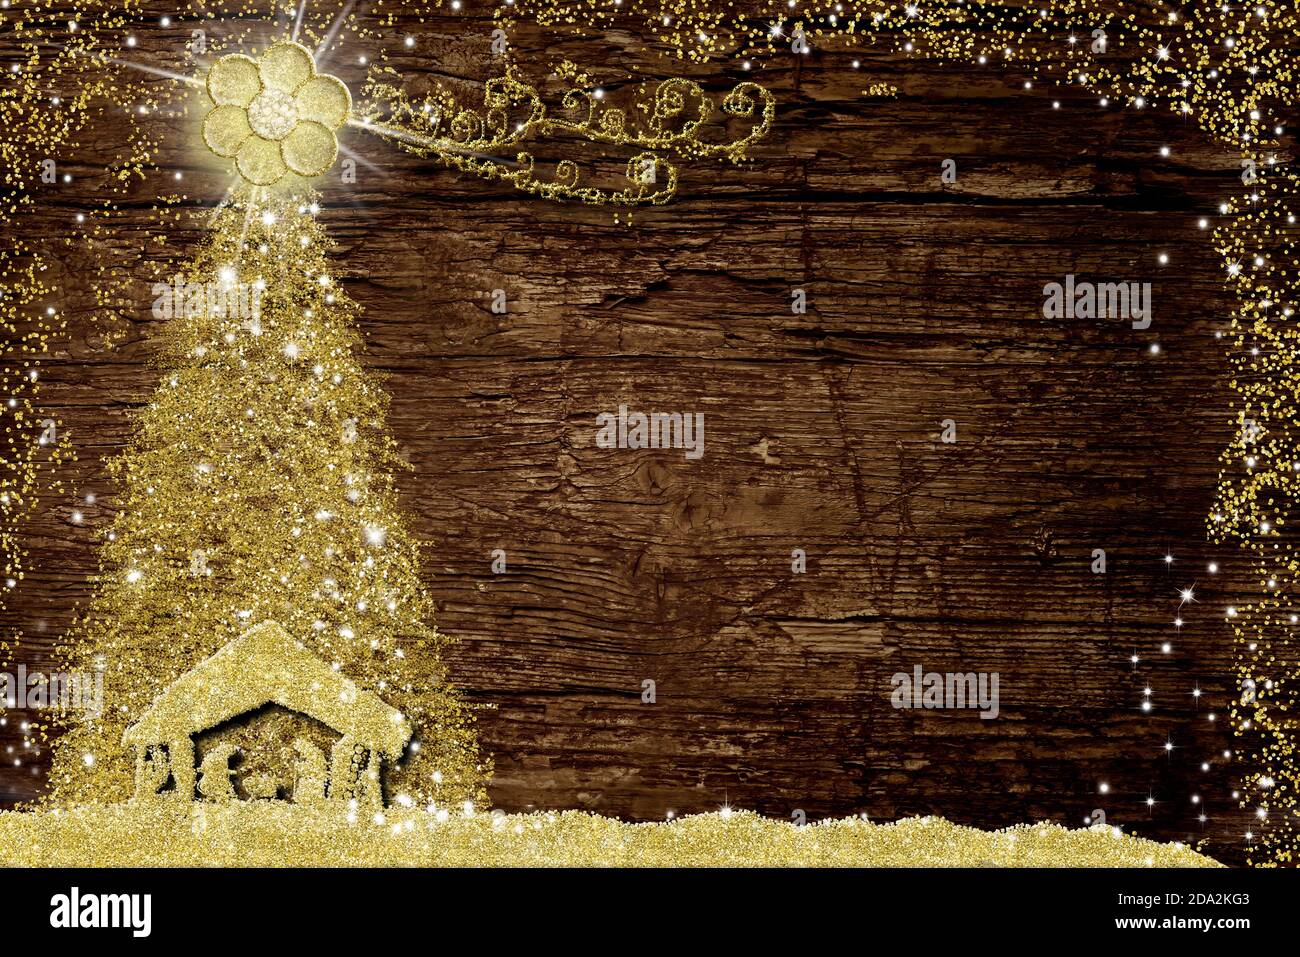 Noël Nativité scène et arbre, cartes de voeux religieuses. Dessin abstrait à main levée de la scène Nativité et de l'arbre de Noël avec paillettes dorées sur l'ancien Banque D'Images